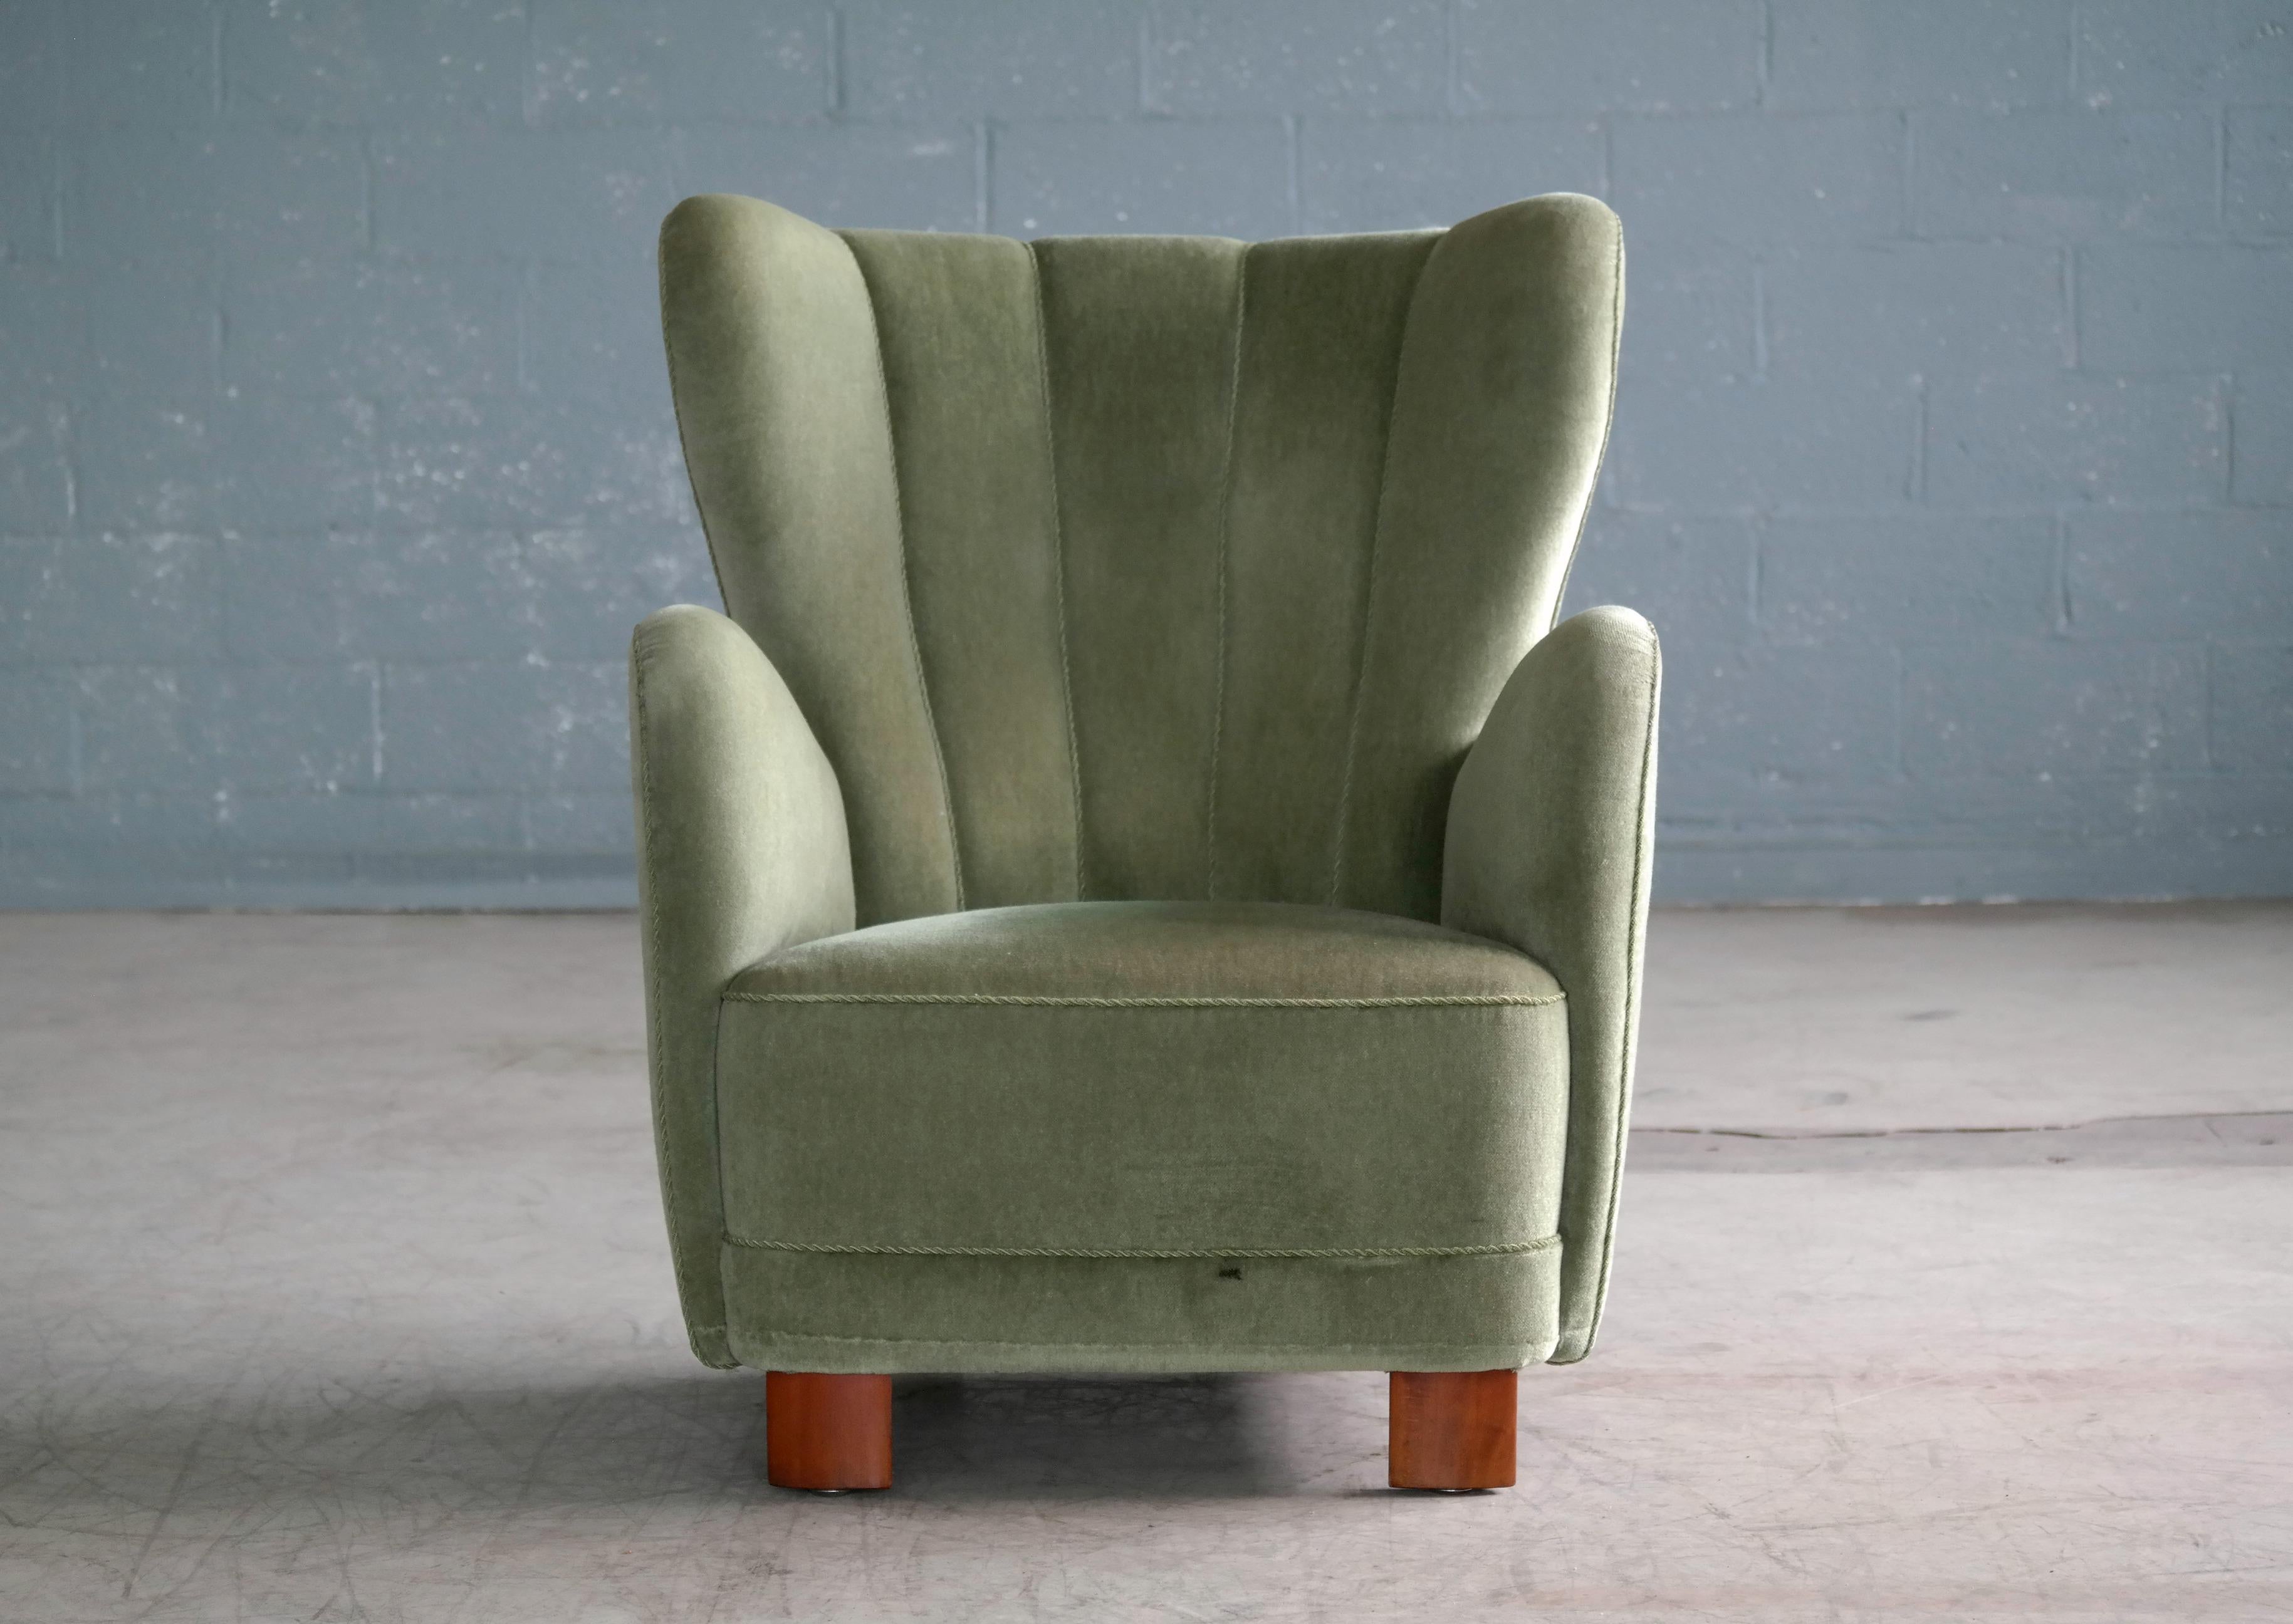 Scandinavian Modern Danish Midcentury High Back Lounge Chair Denmark by Slagelse Mobelvaerk